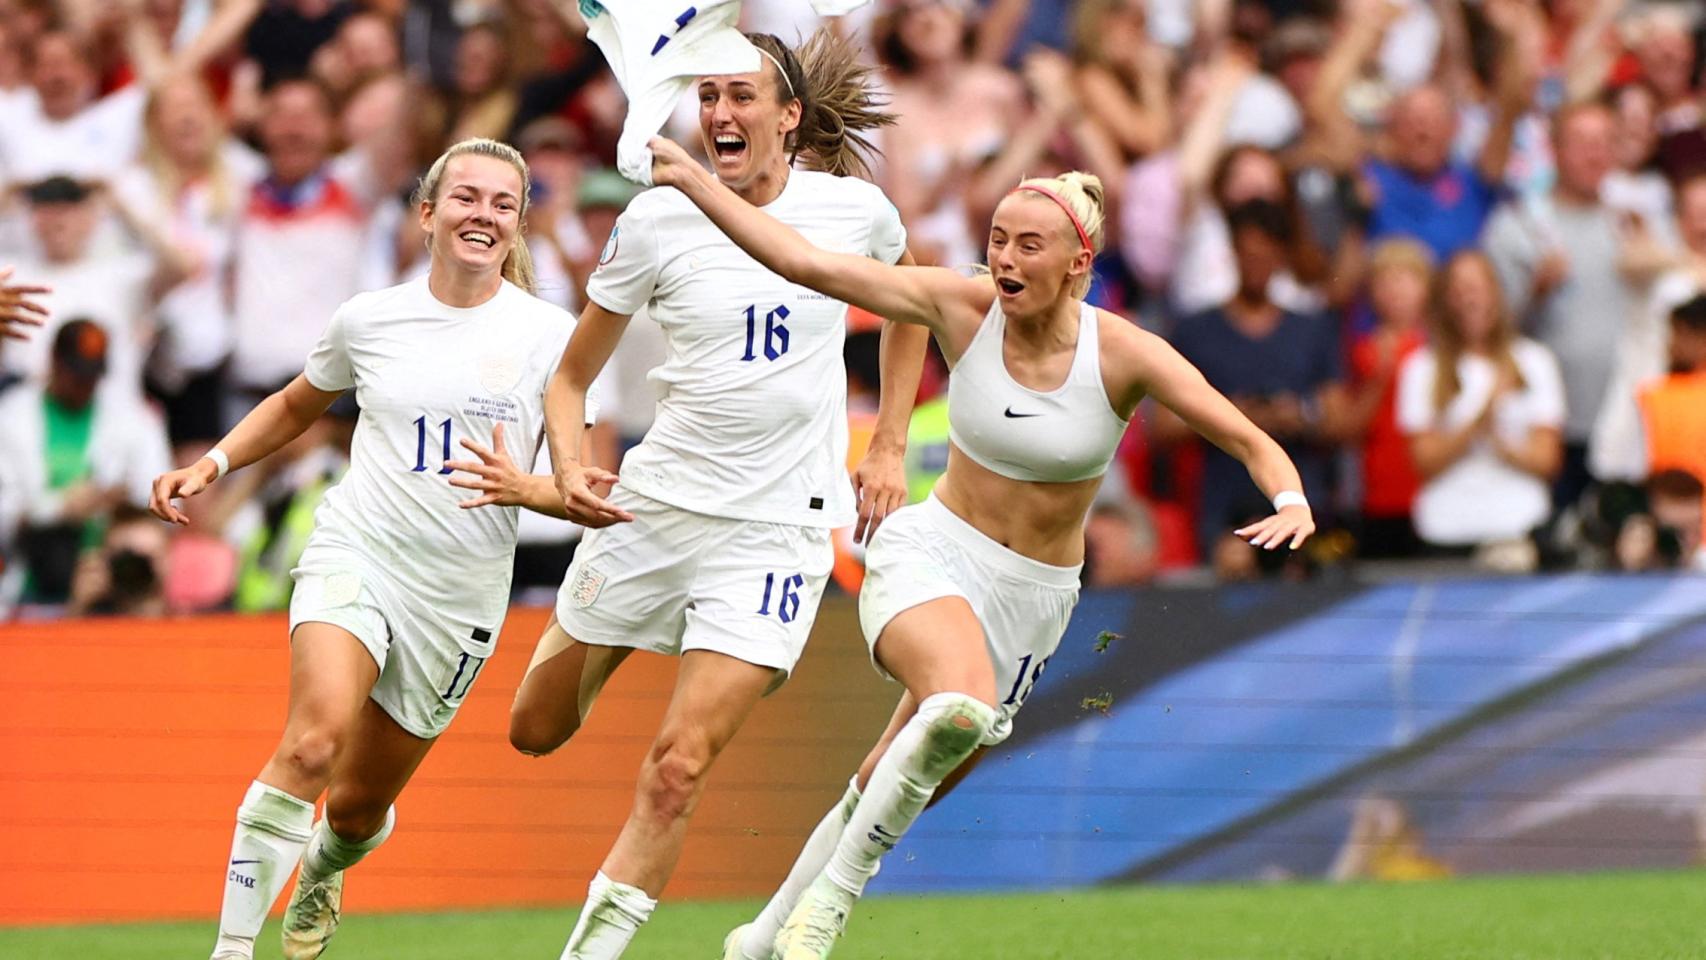 El sujetador deportivo adaptado, el aliado secreto de la selección femenina de fútbol inglesa foto